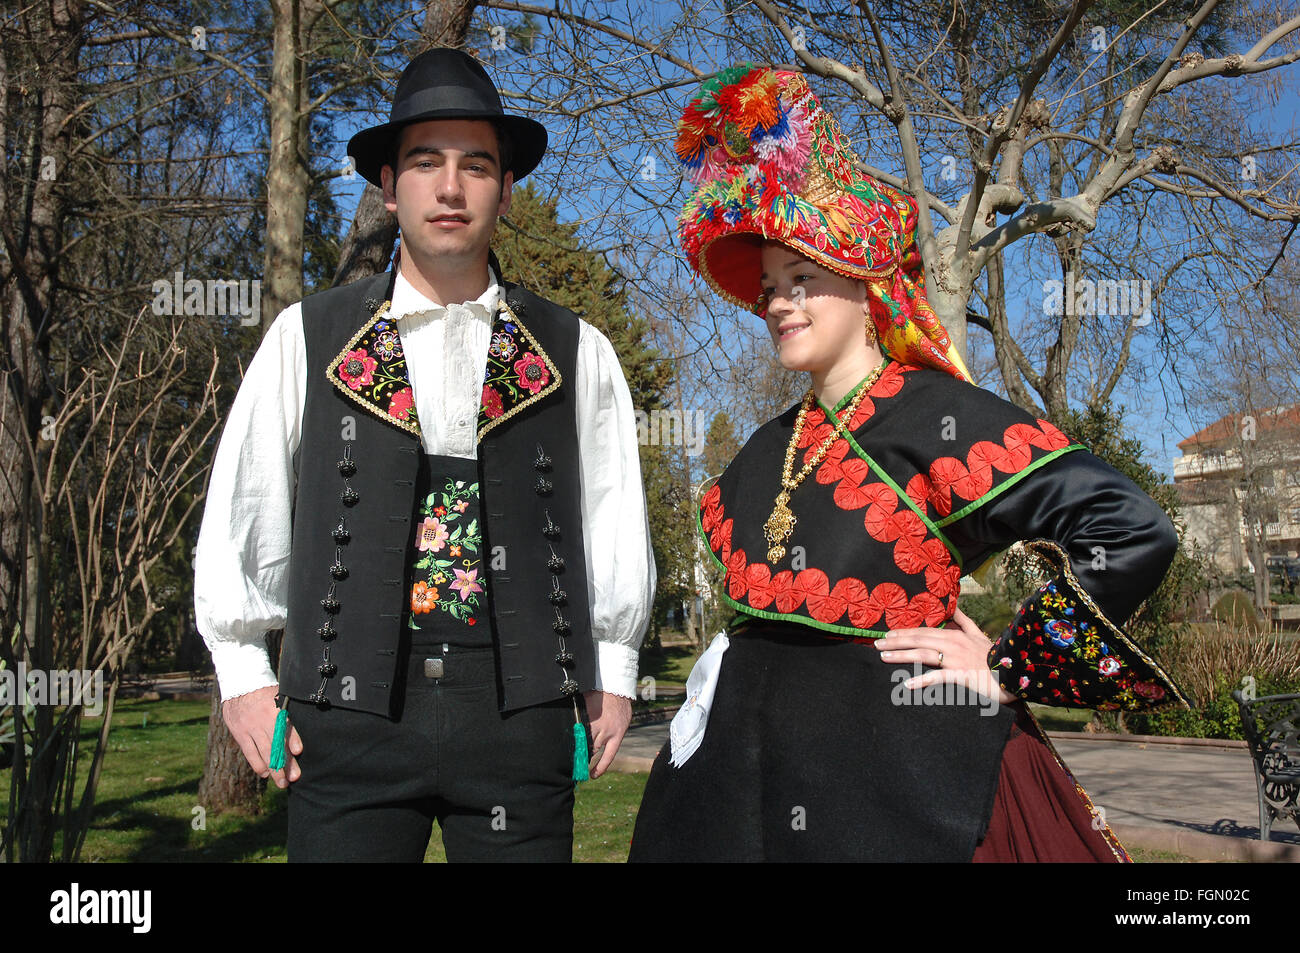 Tipici costumi folk, Montehermoso, Caceres provincia, regione Estremadura, Spagna, Europa Foto Stock